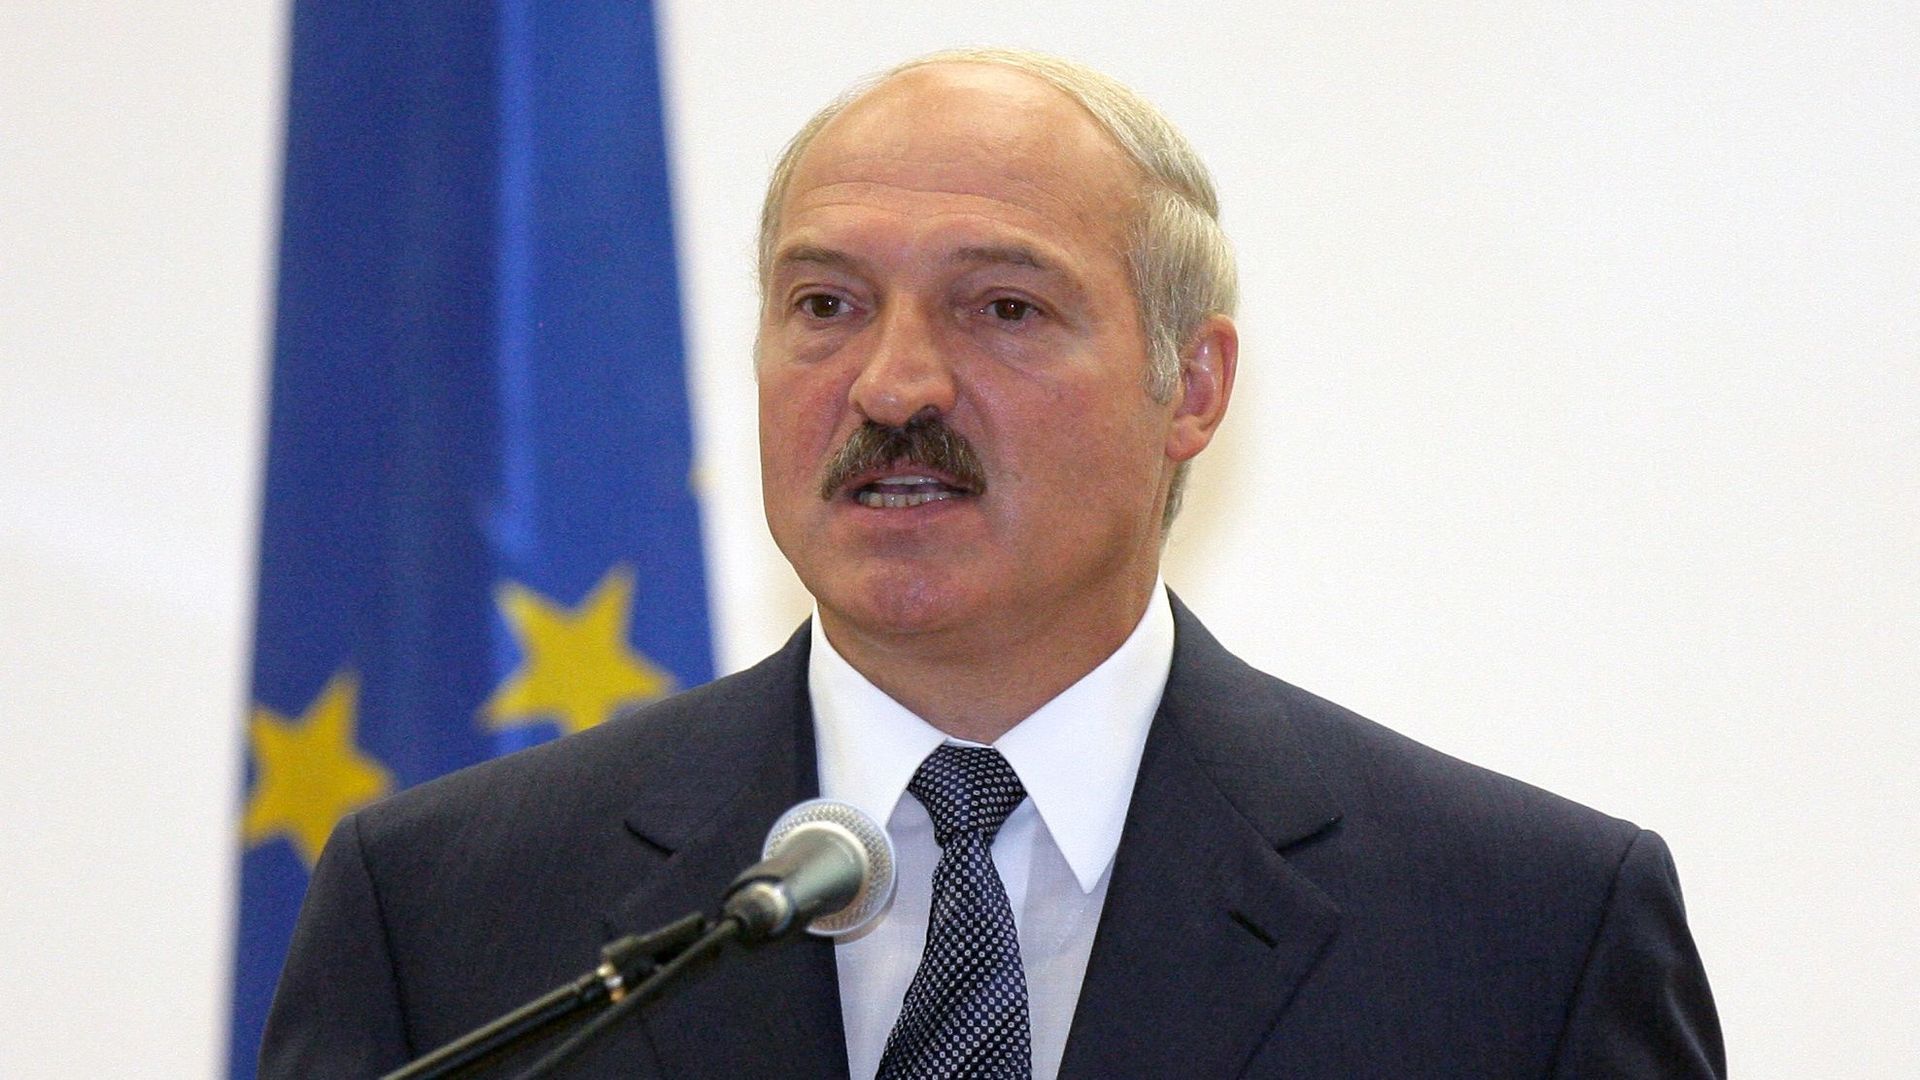 La Biélorussie a agi "légalement" affirme le président Loukachenko